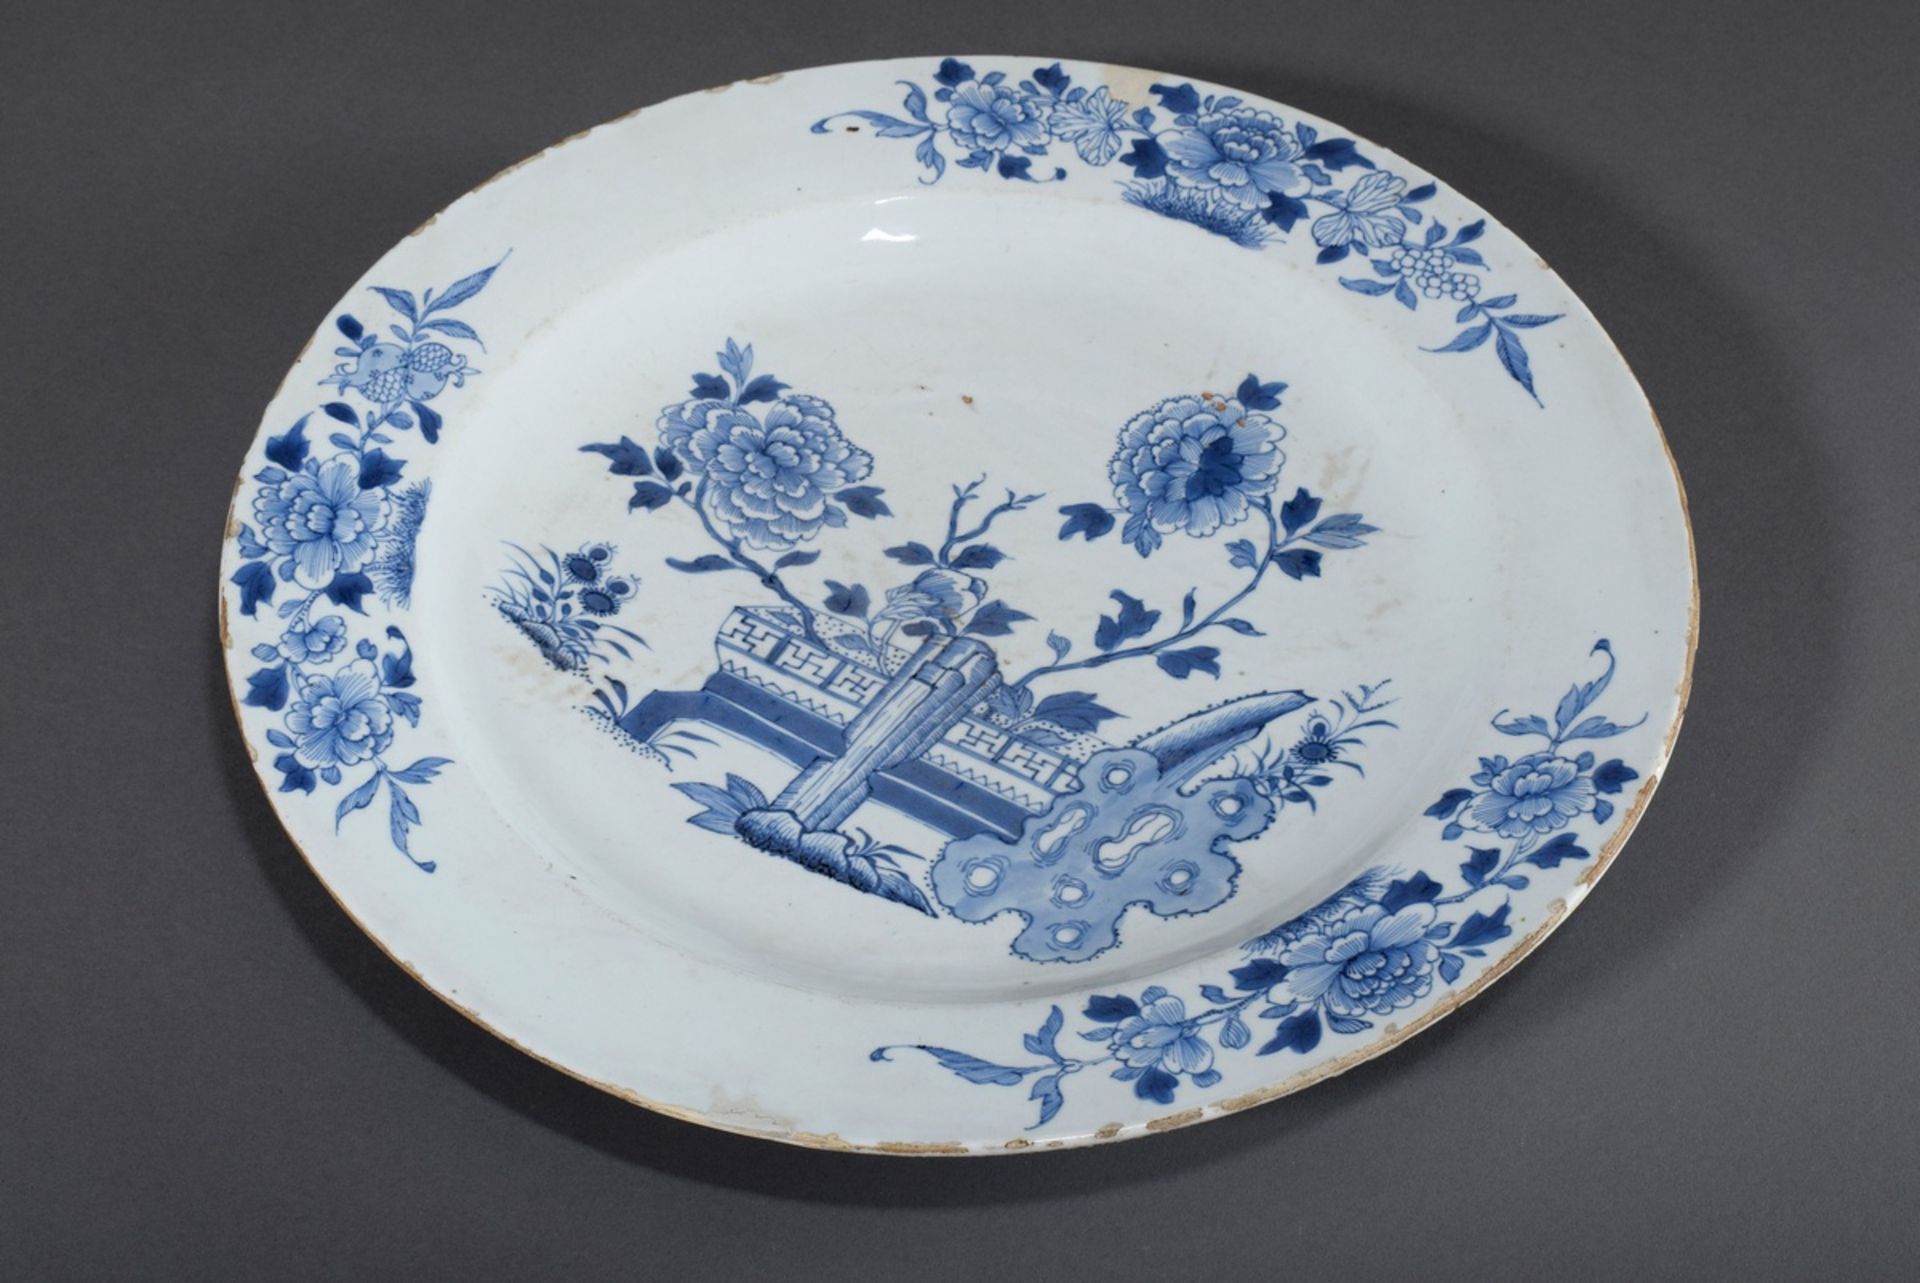 Große Platte mit blau/weißem Dekor "Gartenterras | Large plate with blue/white decoration "Garden t - Image 2 of 8